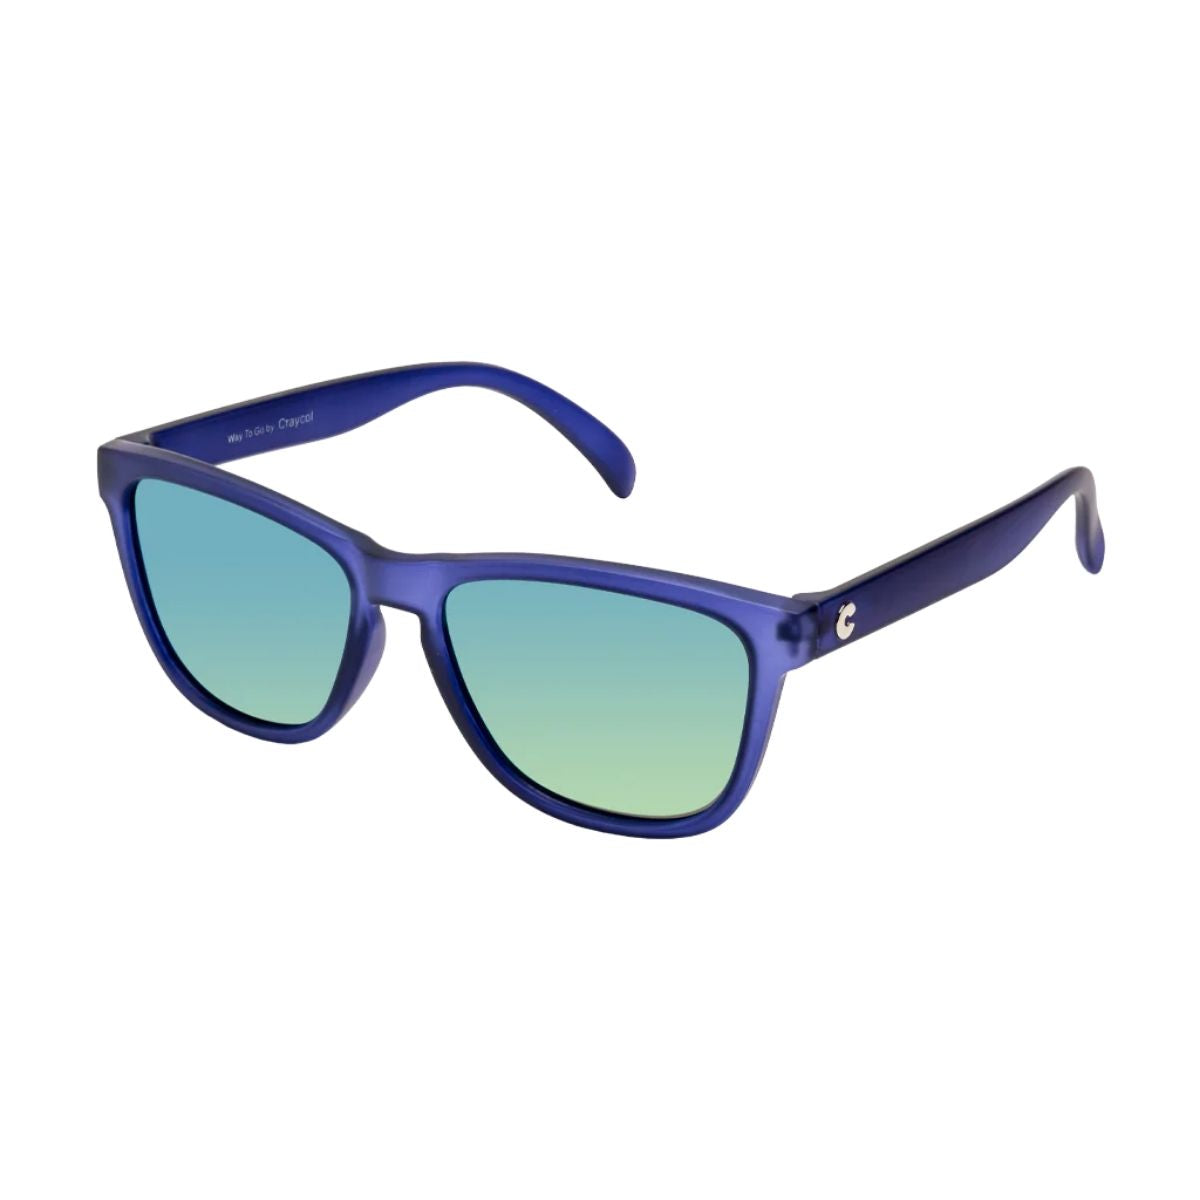 Ravy Navy - Navy Blue Sunglasses